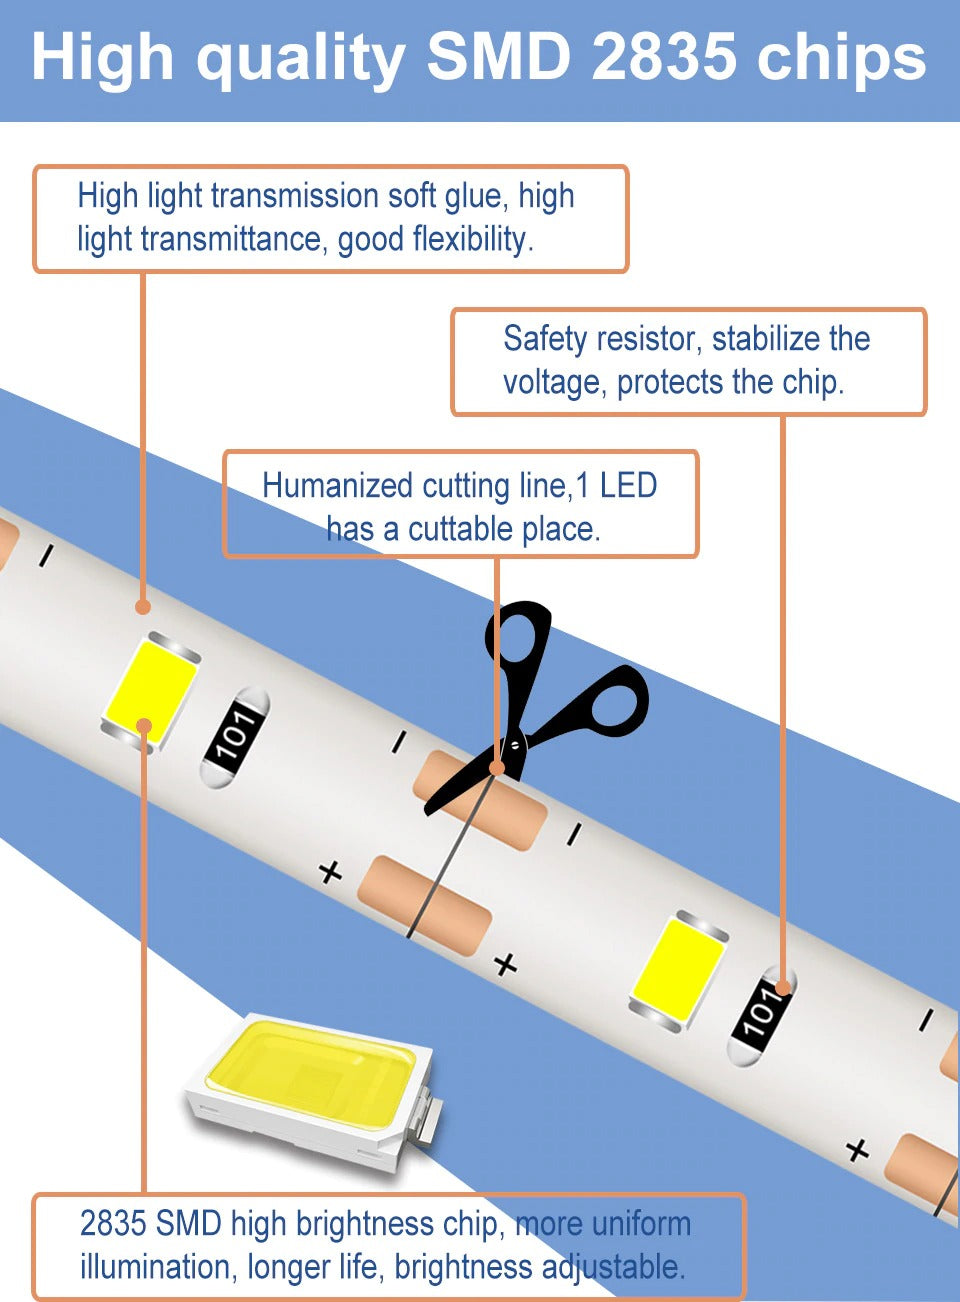 Motion Sensor LED Strip Light